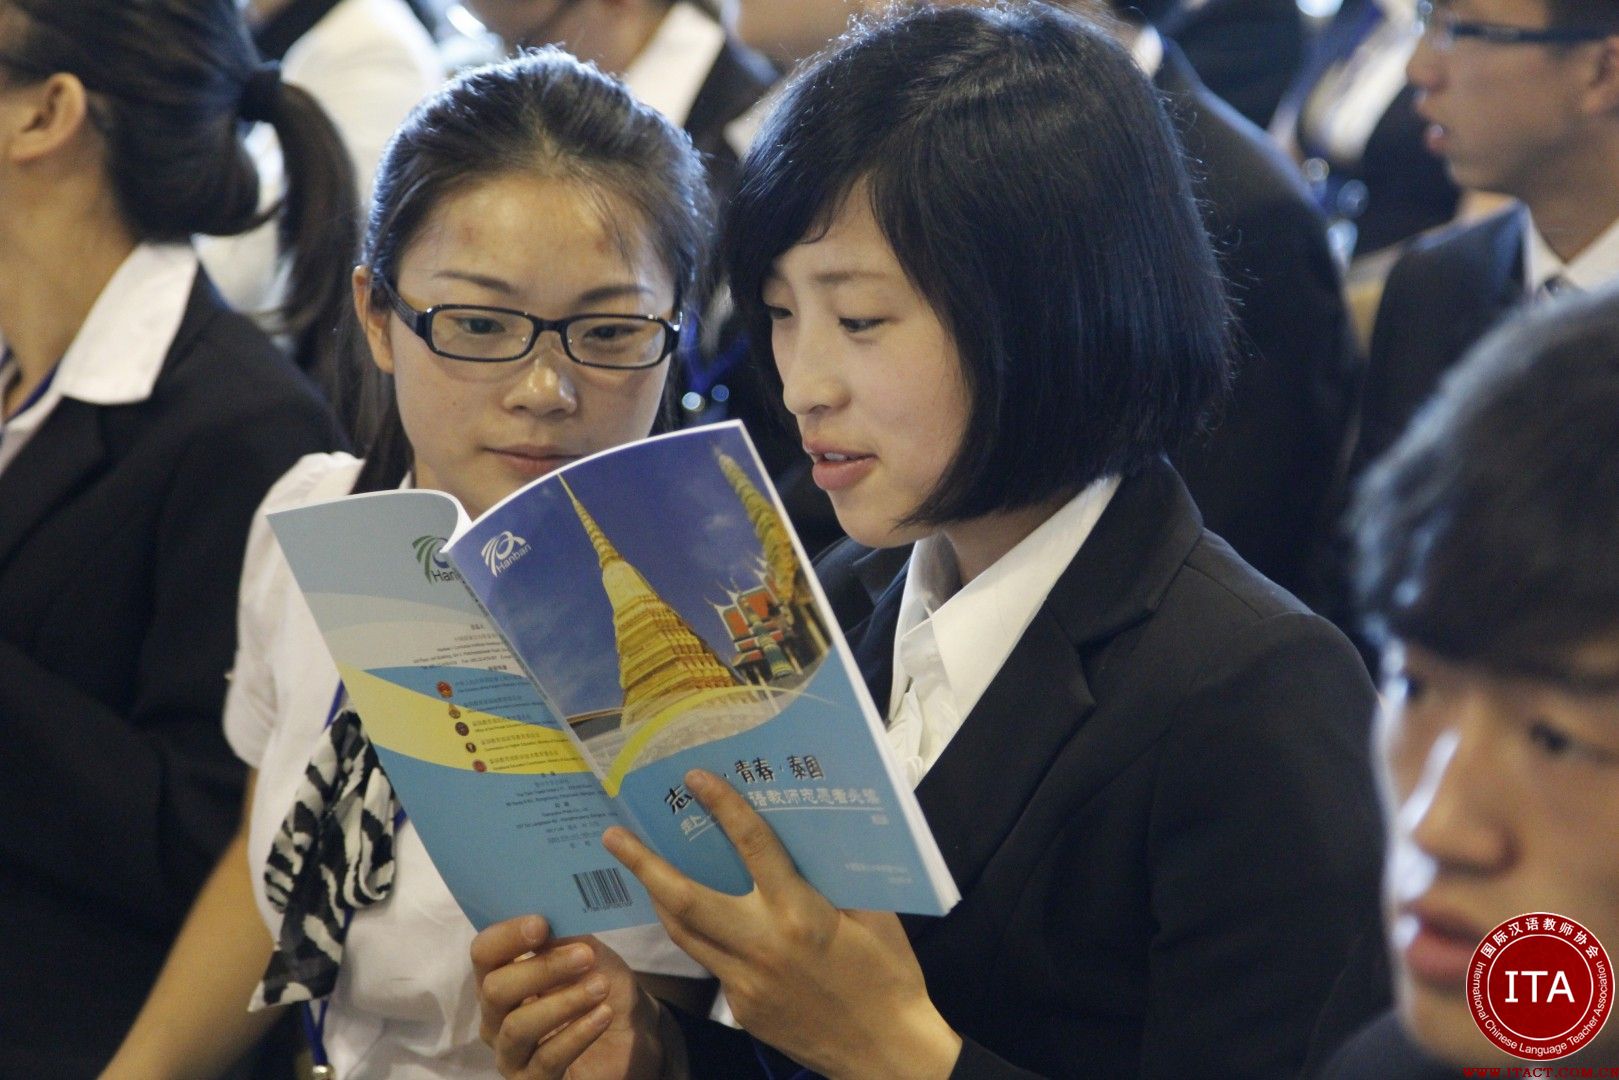 ITA国际汉语教师的泰国任教生活